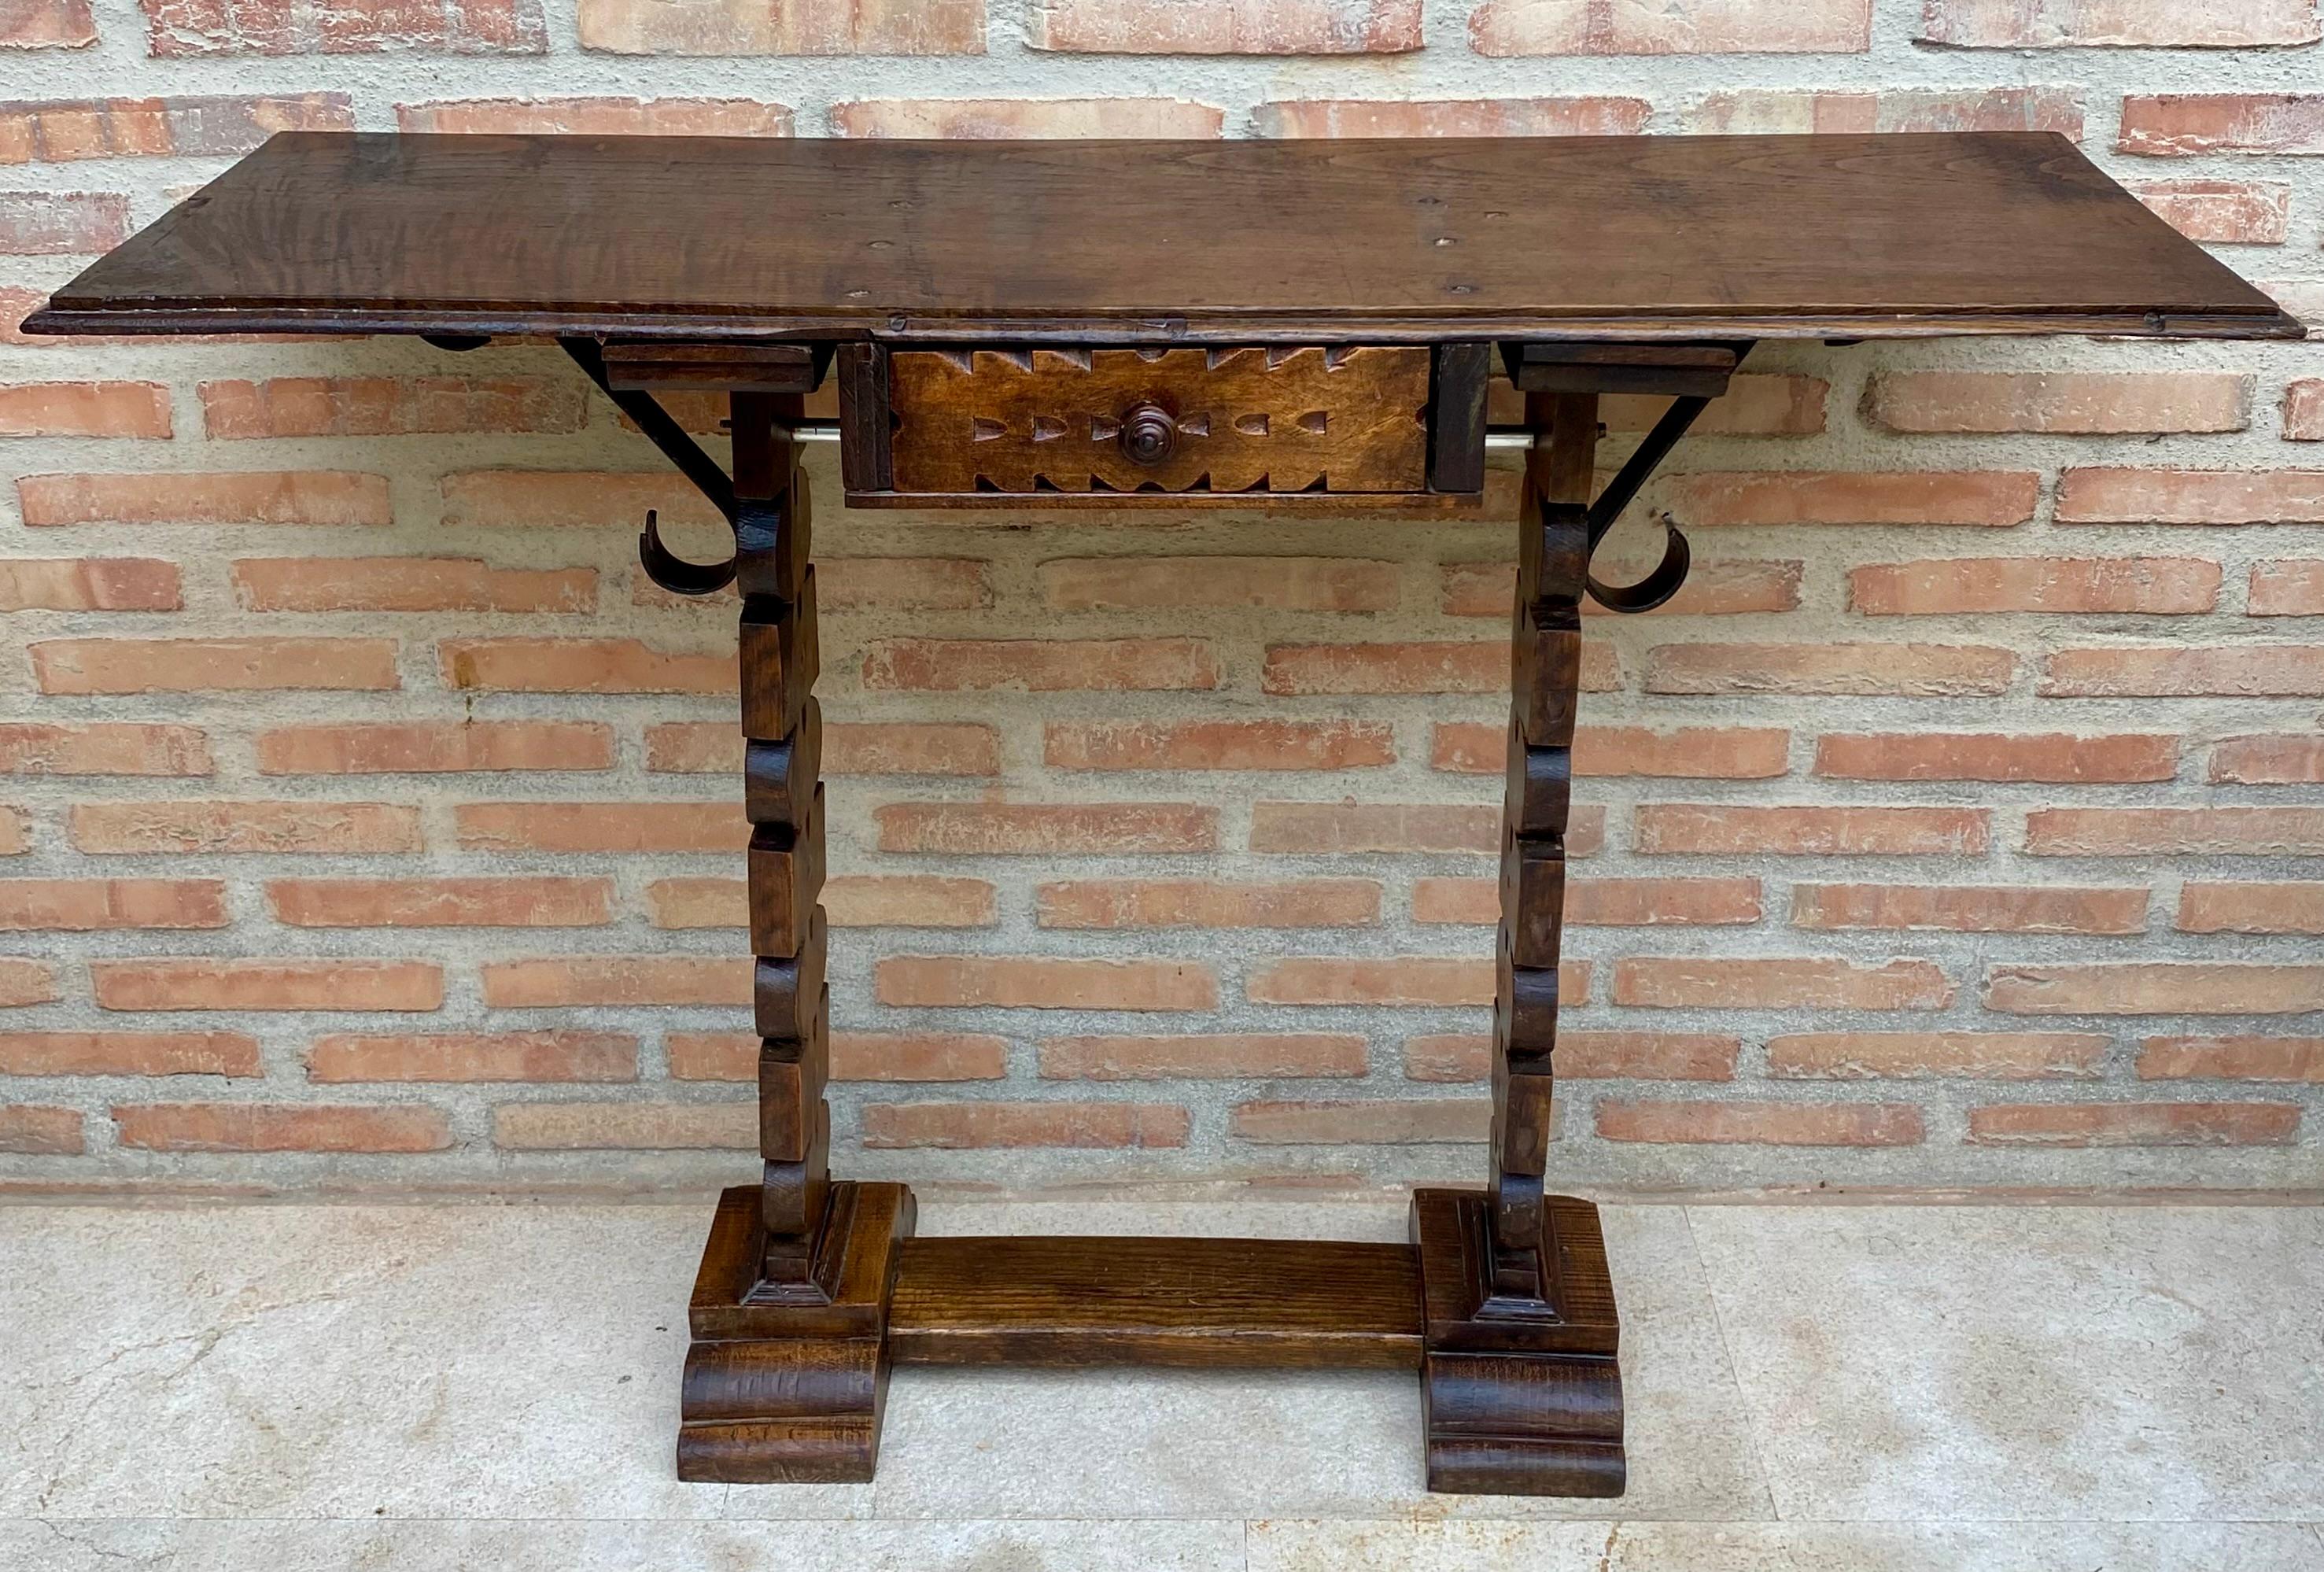 
Spanischer Konsolentisch aus dem frühen 20. Jahrhundert mit einer Schublade. Spanischer Konsolentisch aus dem frühen 20. Jahrhundert mit zwei Sockelbeinen, die durch eine geschnitzte Strebe verbunden sind.